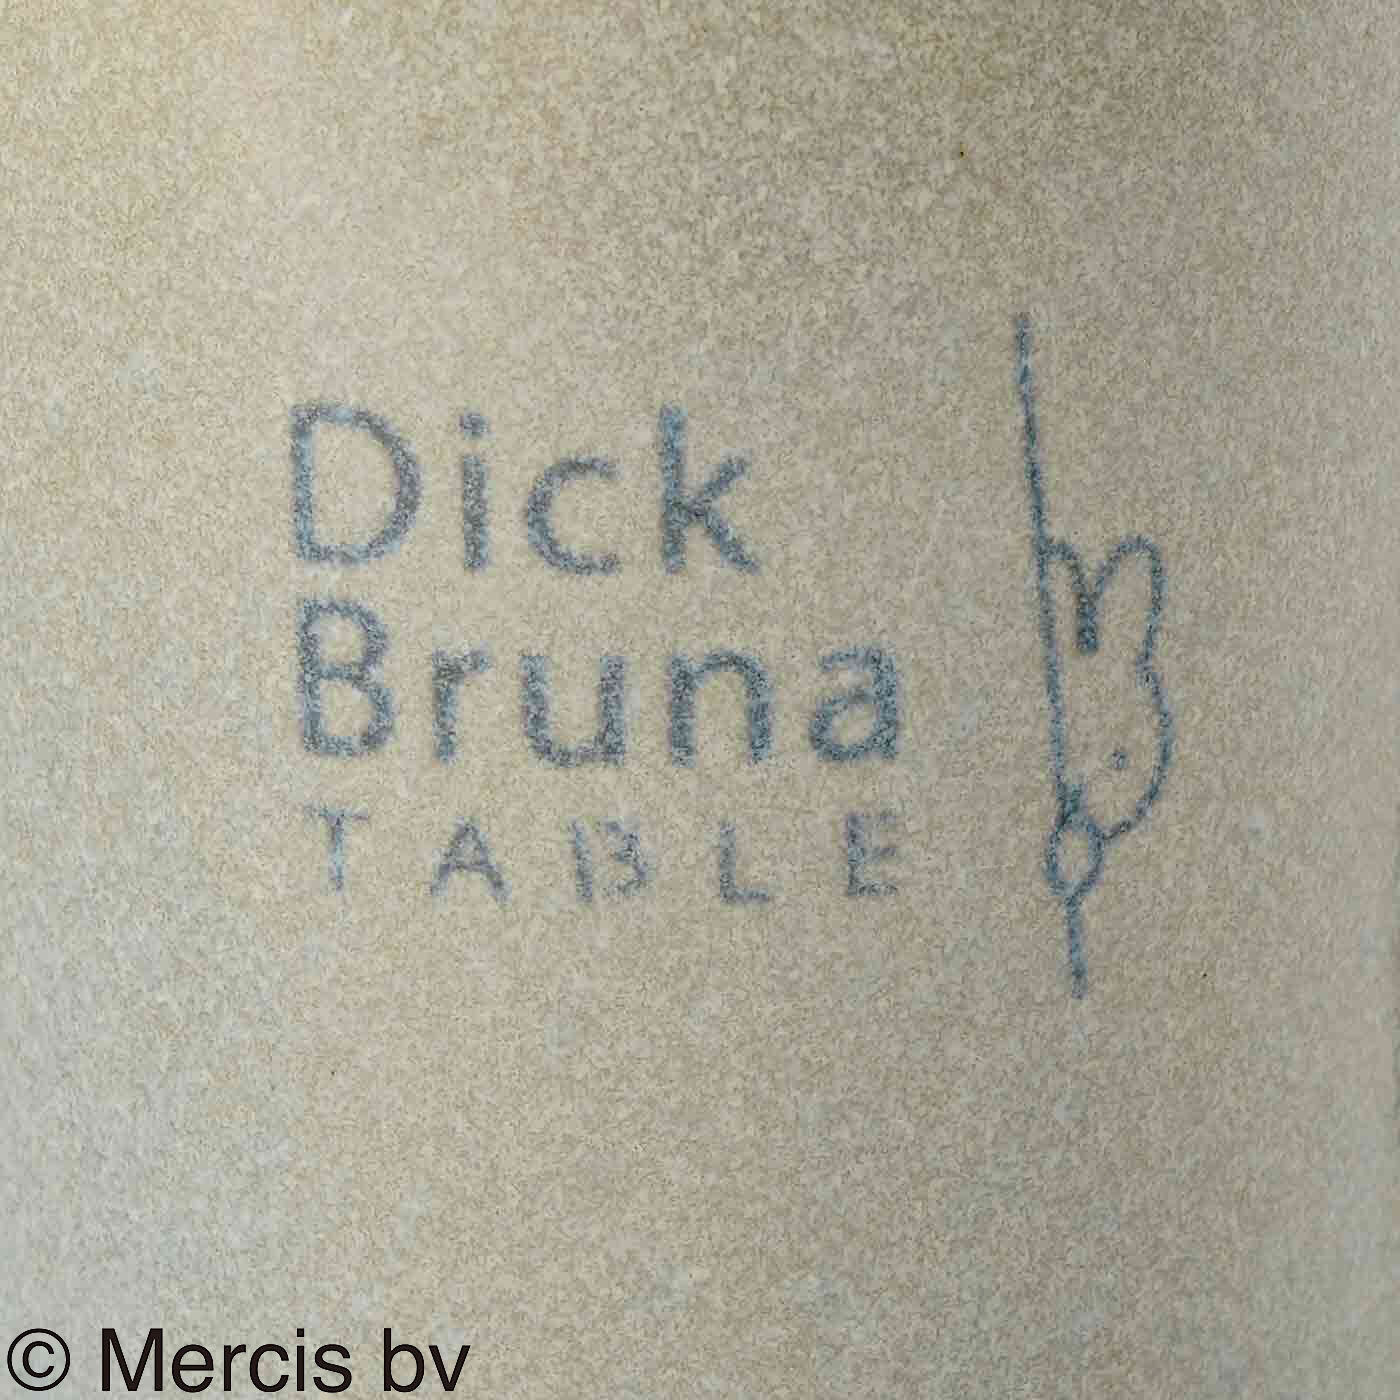 ディック・ブルーナ テーブル|Dick Bruna TABLE  テーブルを華やかに彩るマグカップの会|特徴ある釉薬を使っています